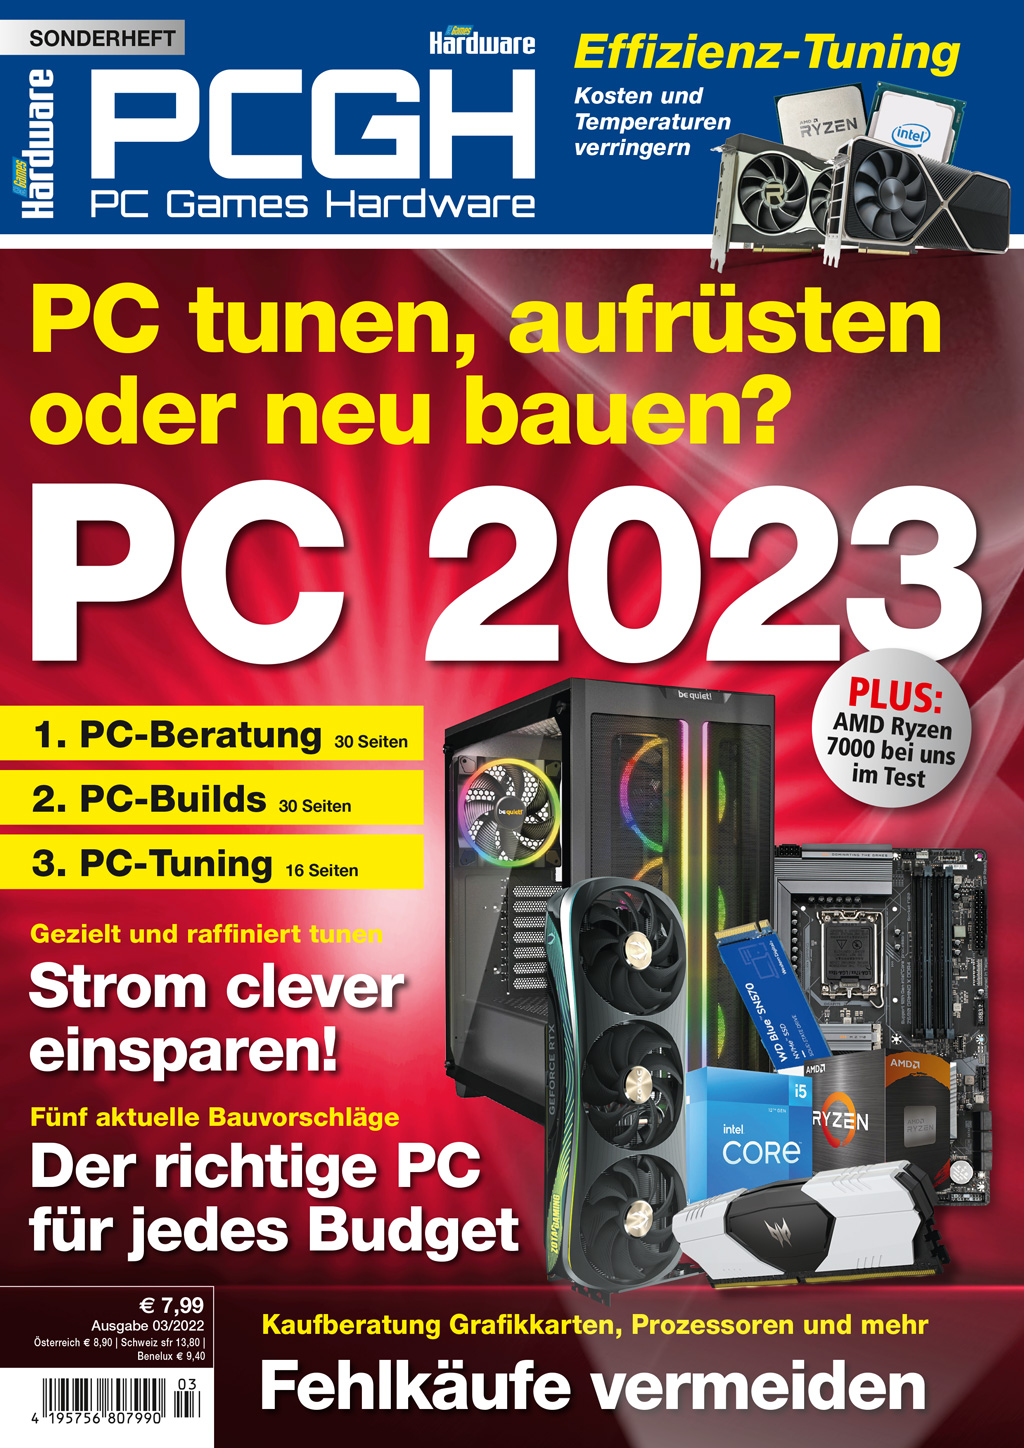 PCGH SH   003/2022 PC tunen, aufrüsten